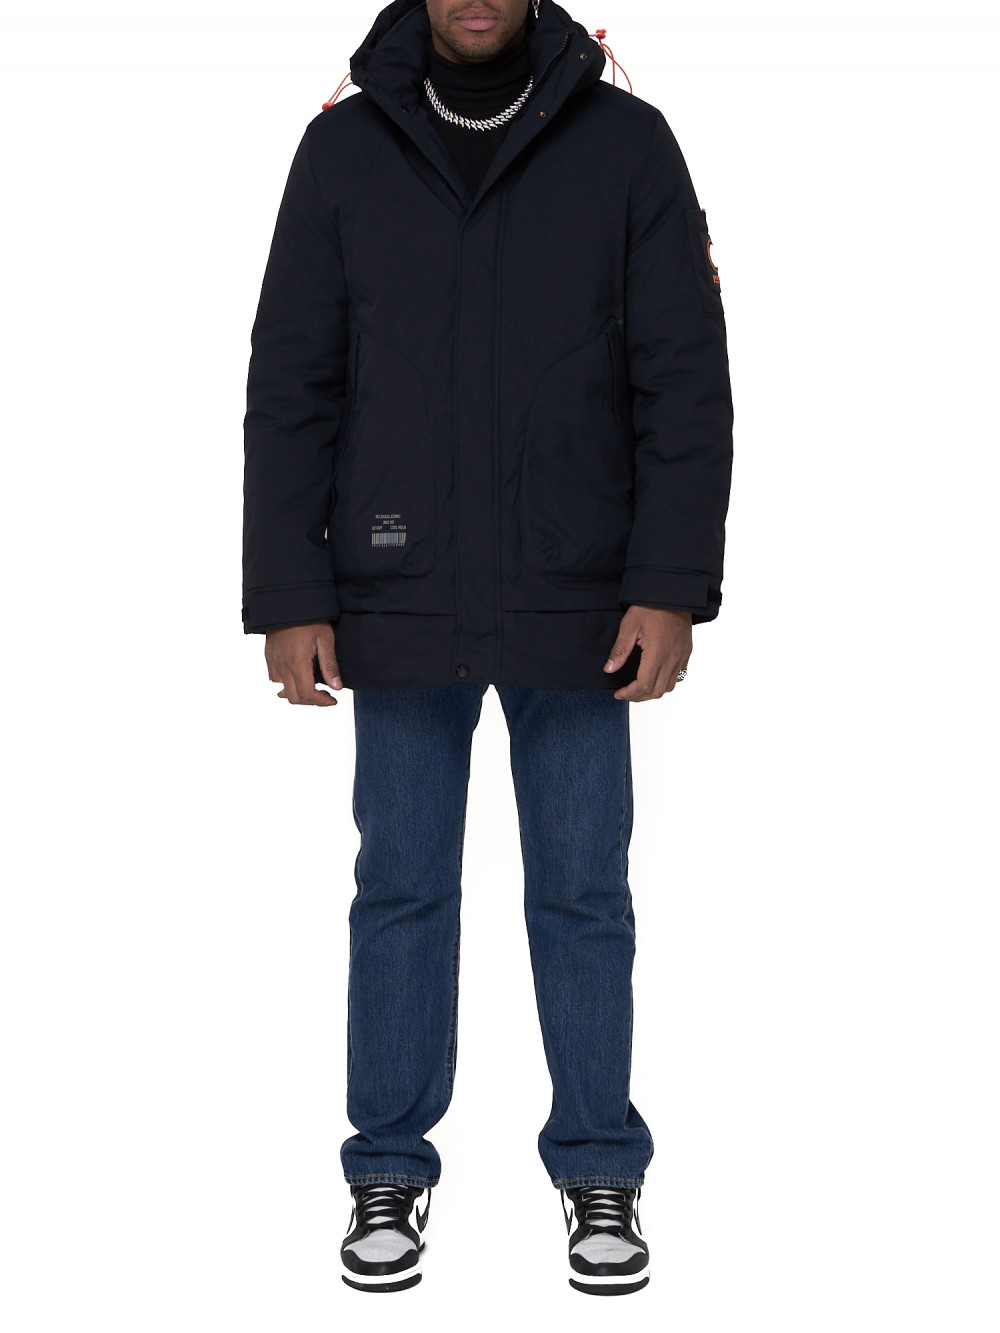 Спортивная куртка мужская NoBrand AD90016 синяя XXL